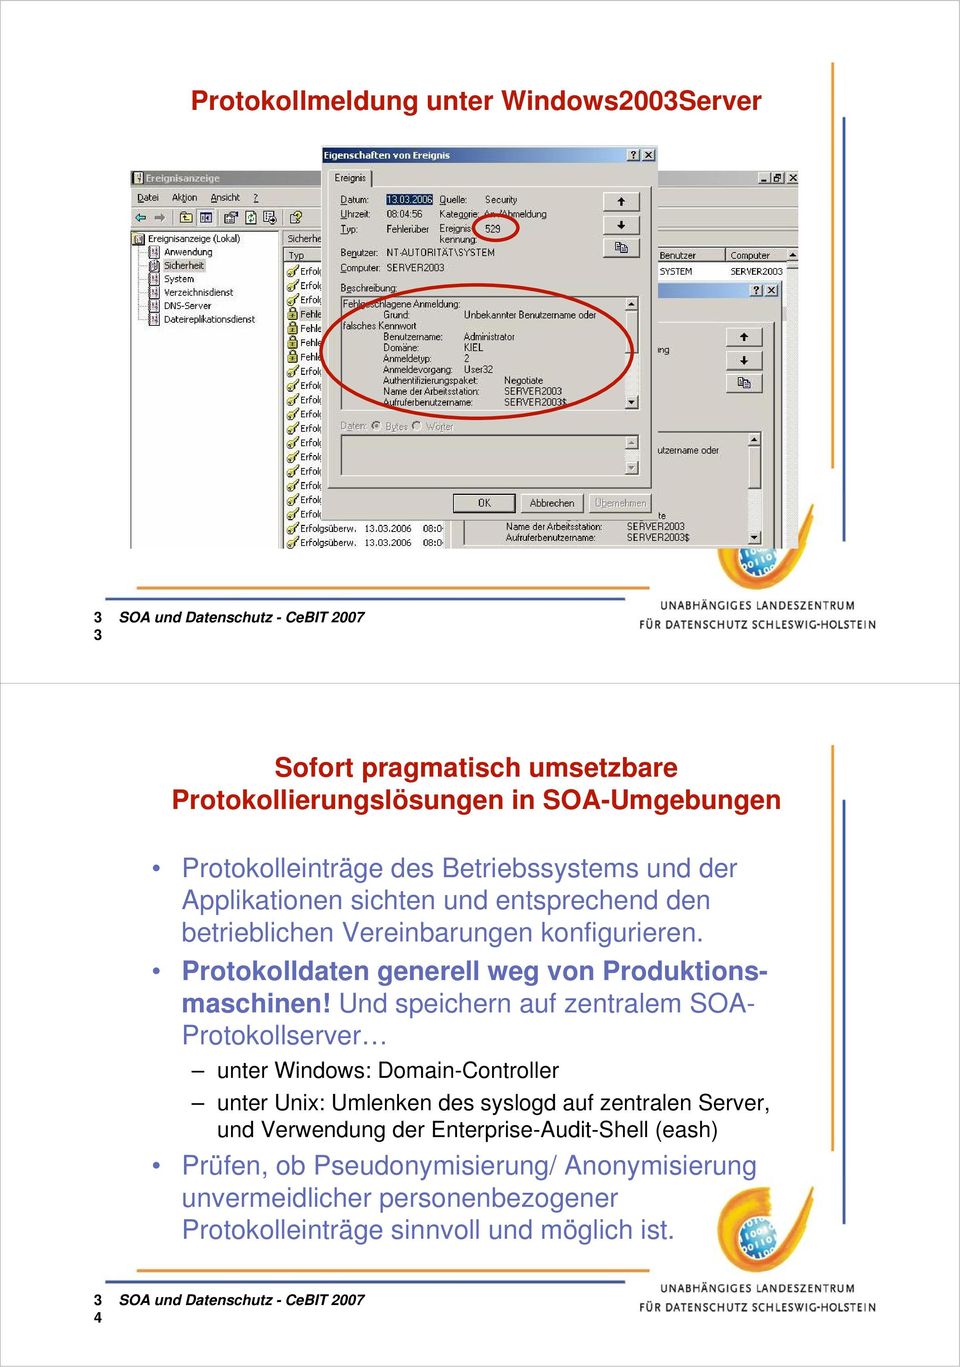 Und speichern auf zentralem SOA- Protokollserver unter Windows: Domain-Controller unter Unix: Umlenken des syslogd auf zentralen Server, und Verwendung